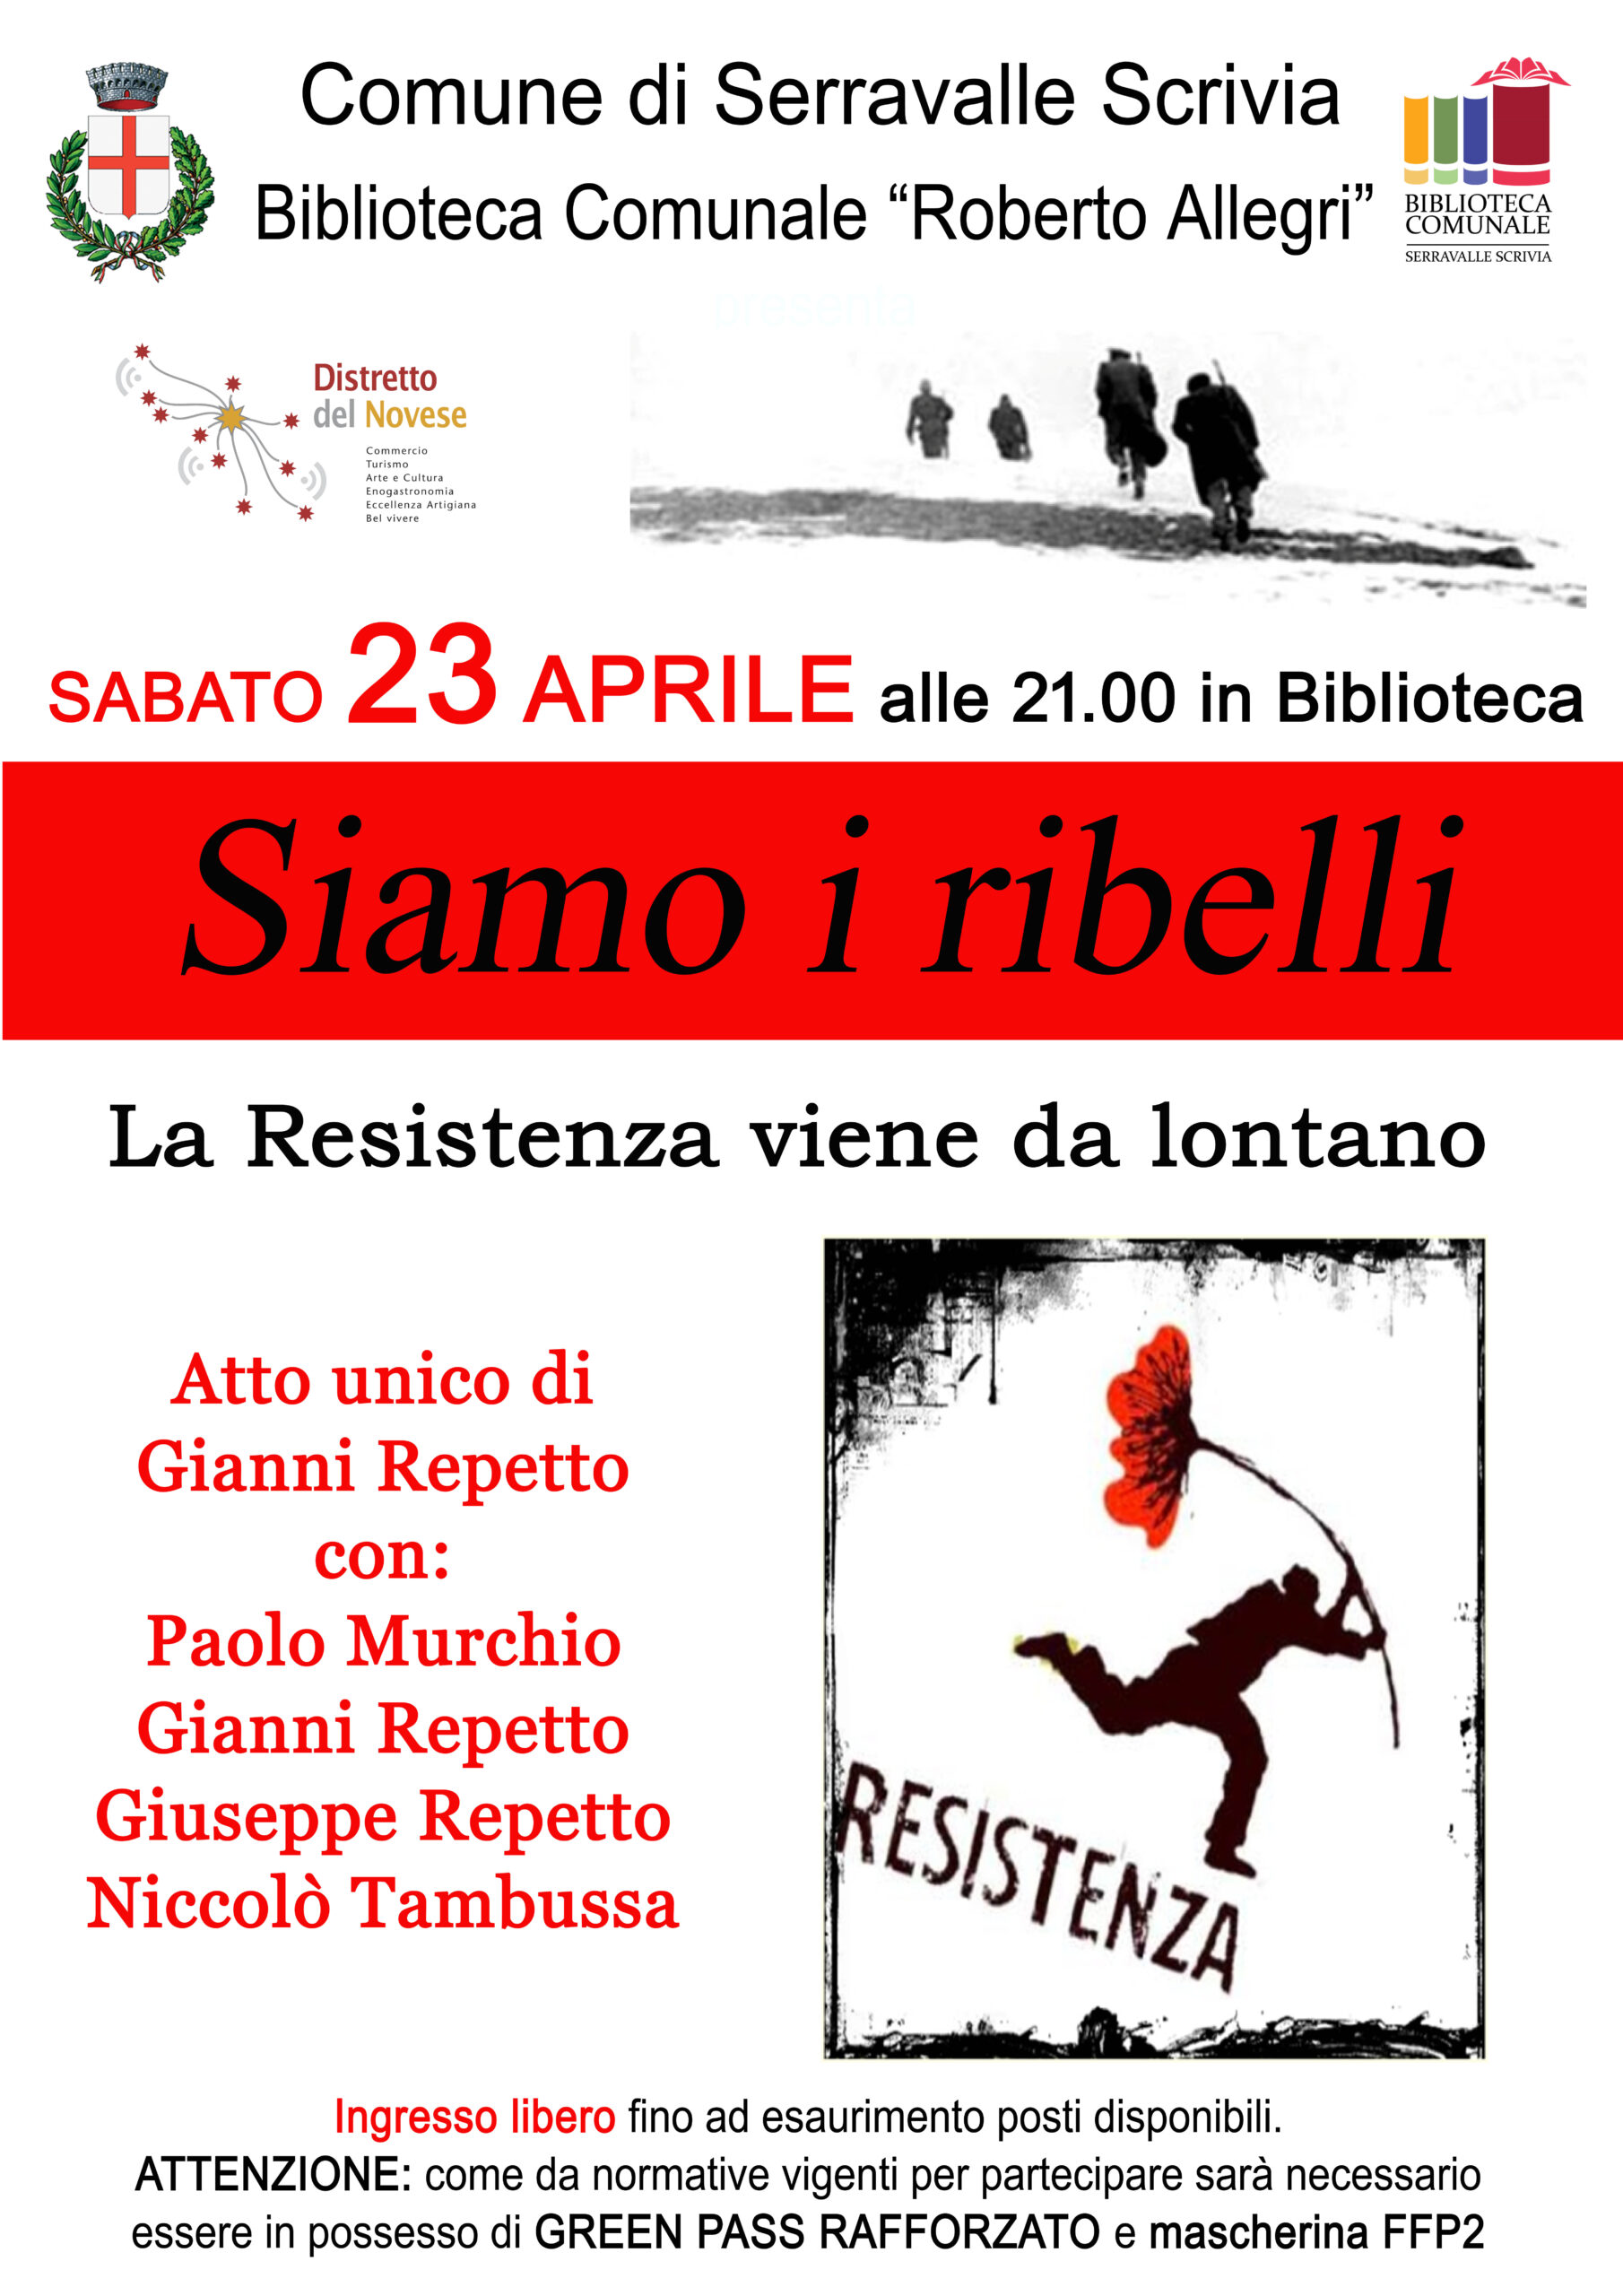 Serravalle Scrivia: in biblioteca “Siamo i ribelli. La Resistenza viene da lontano”, atto unico di Gianni Repetto